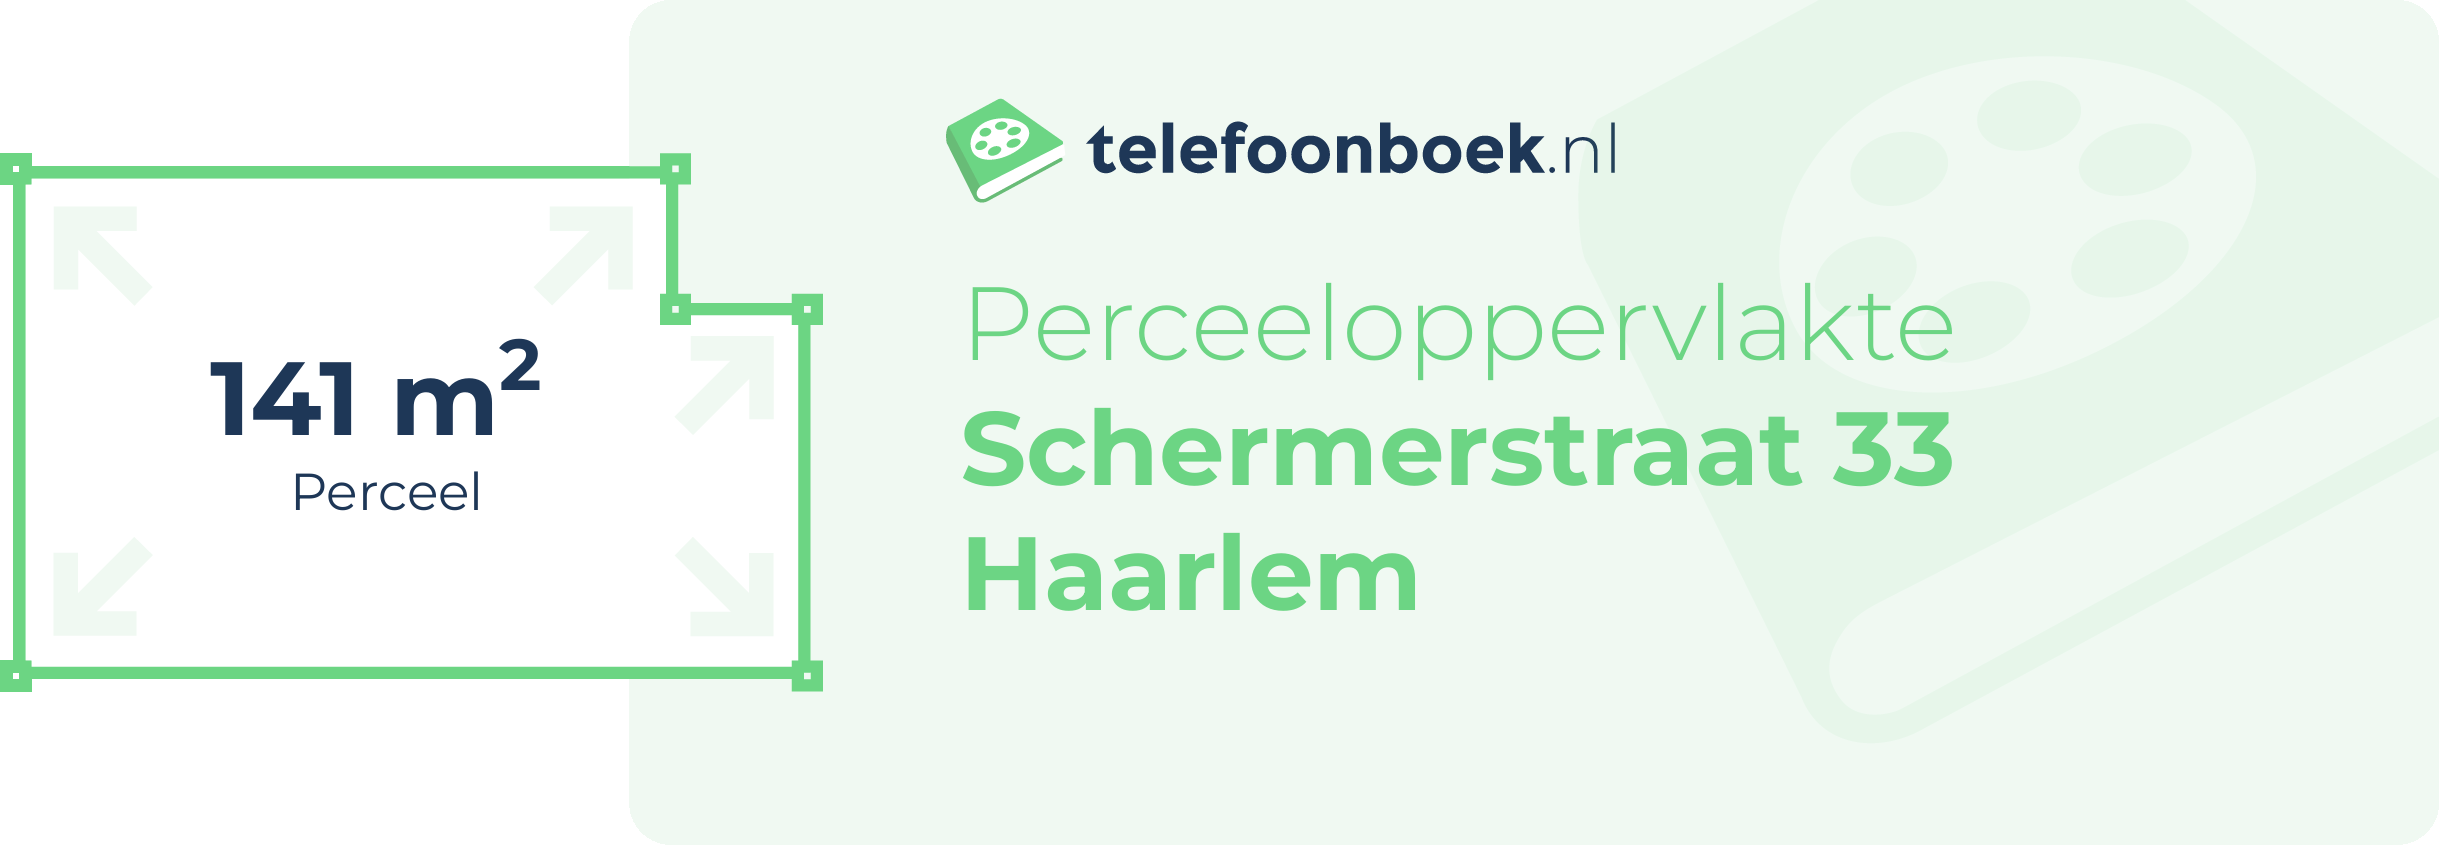 Perceeloppervlakte Schermerstraat 33 Haarlem